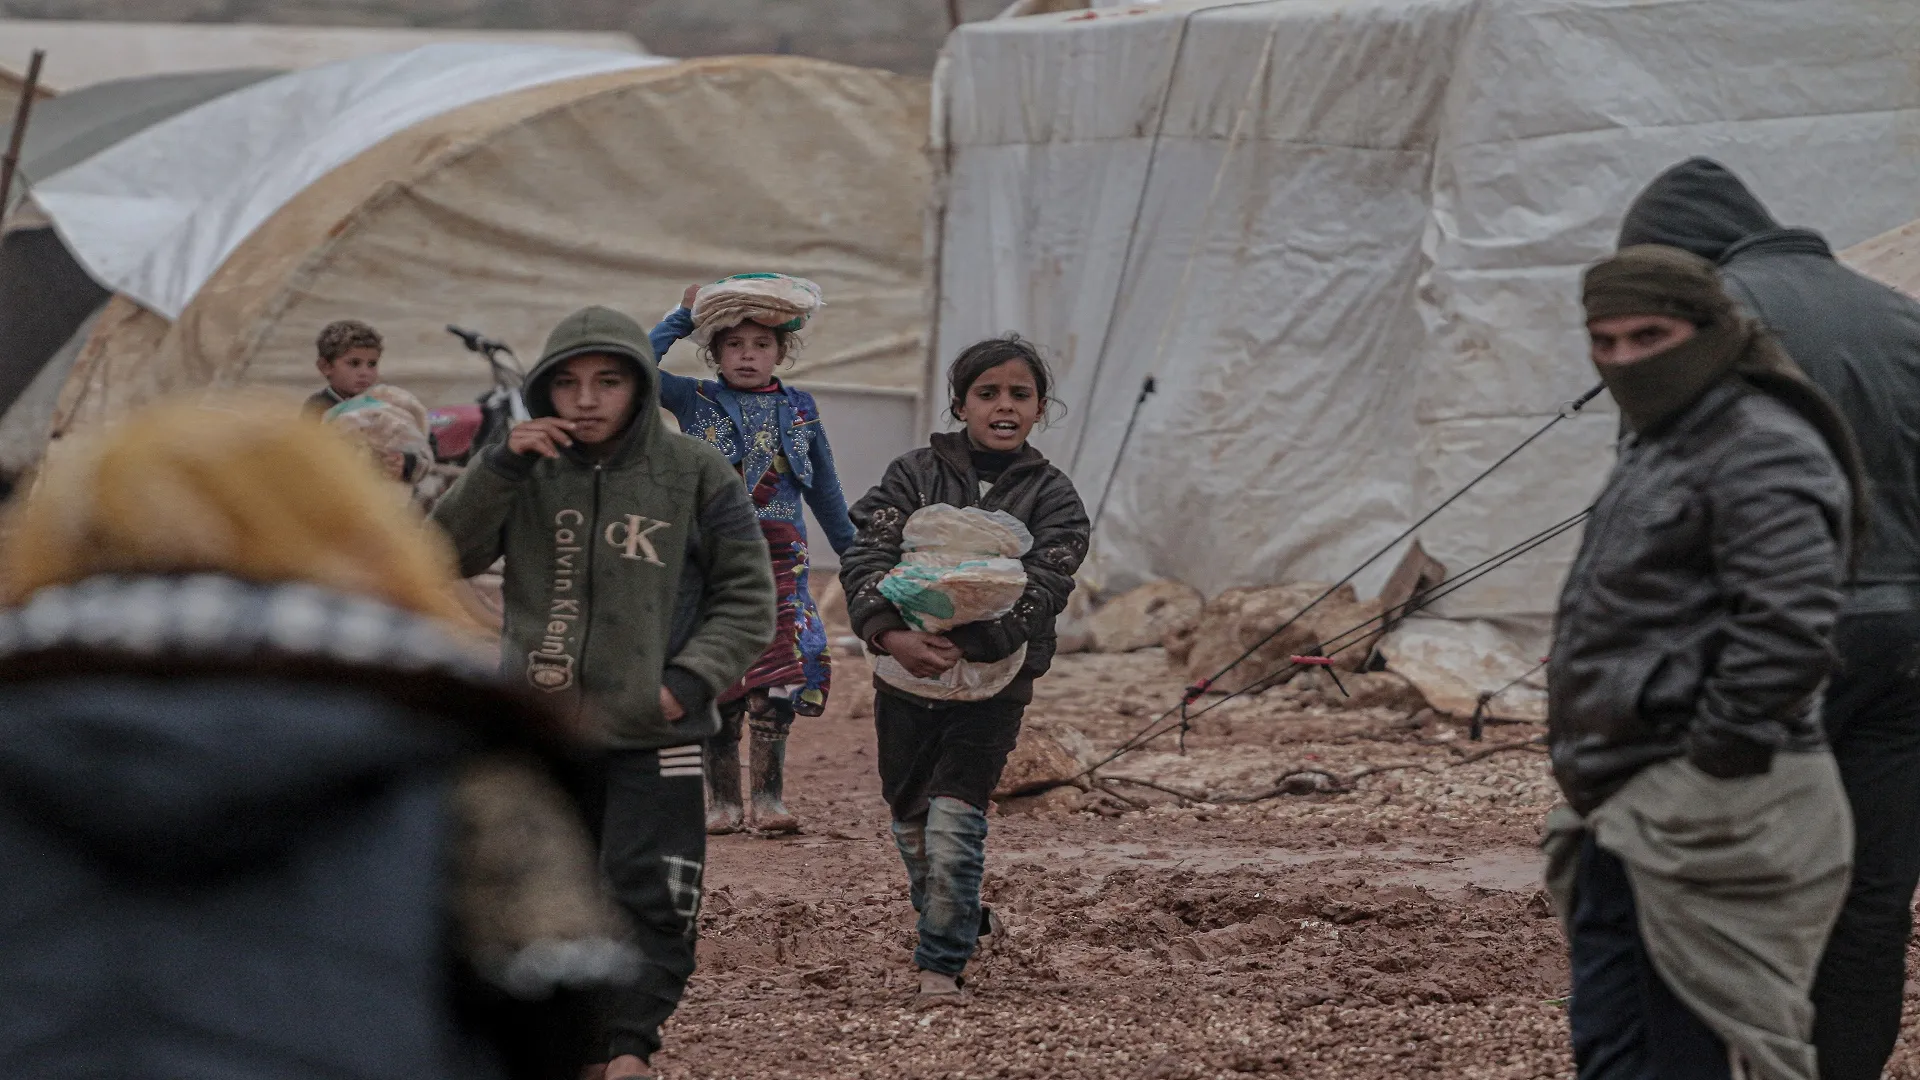 "استجابة سوريا" يقدم استبياناً حول المخاوف الأساسية للنازحين في المخيمات 